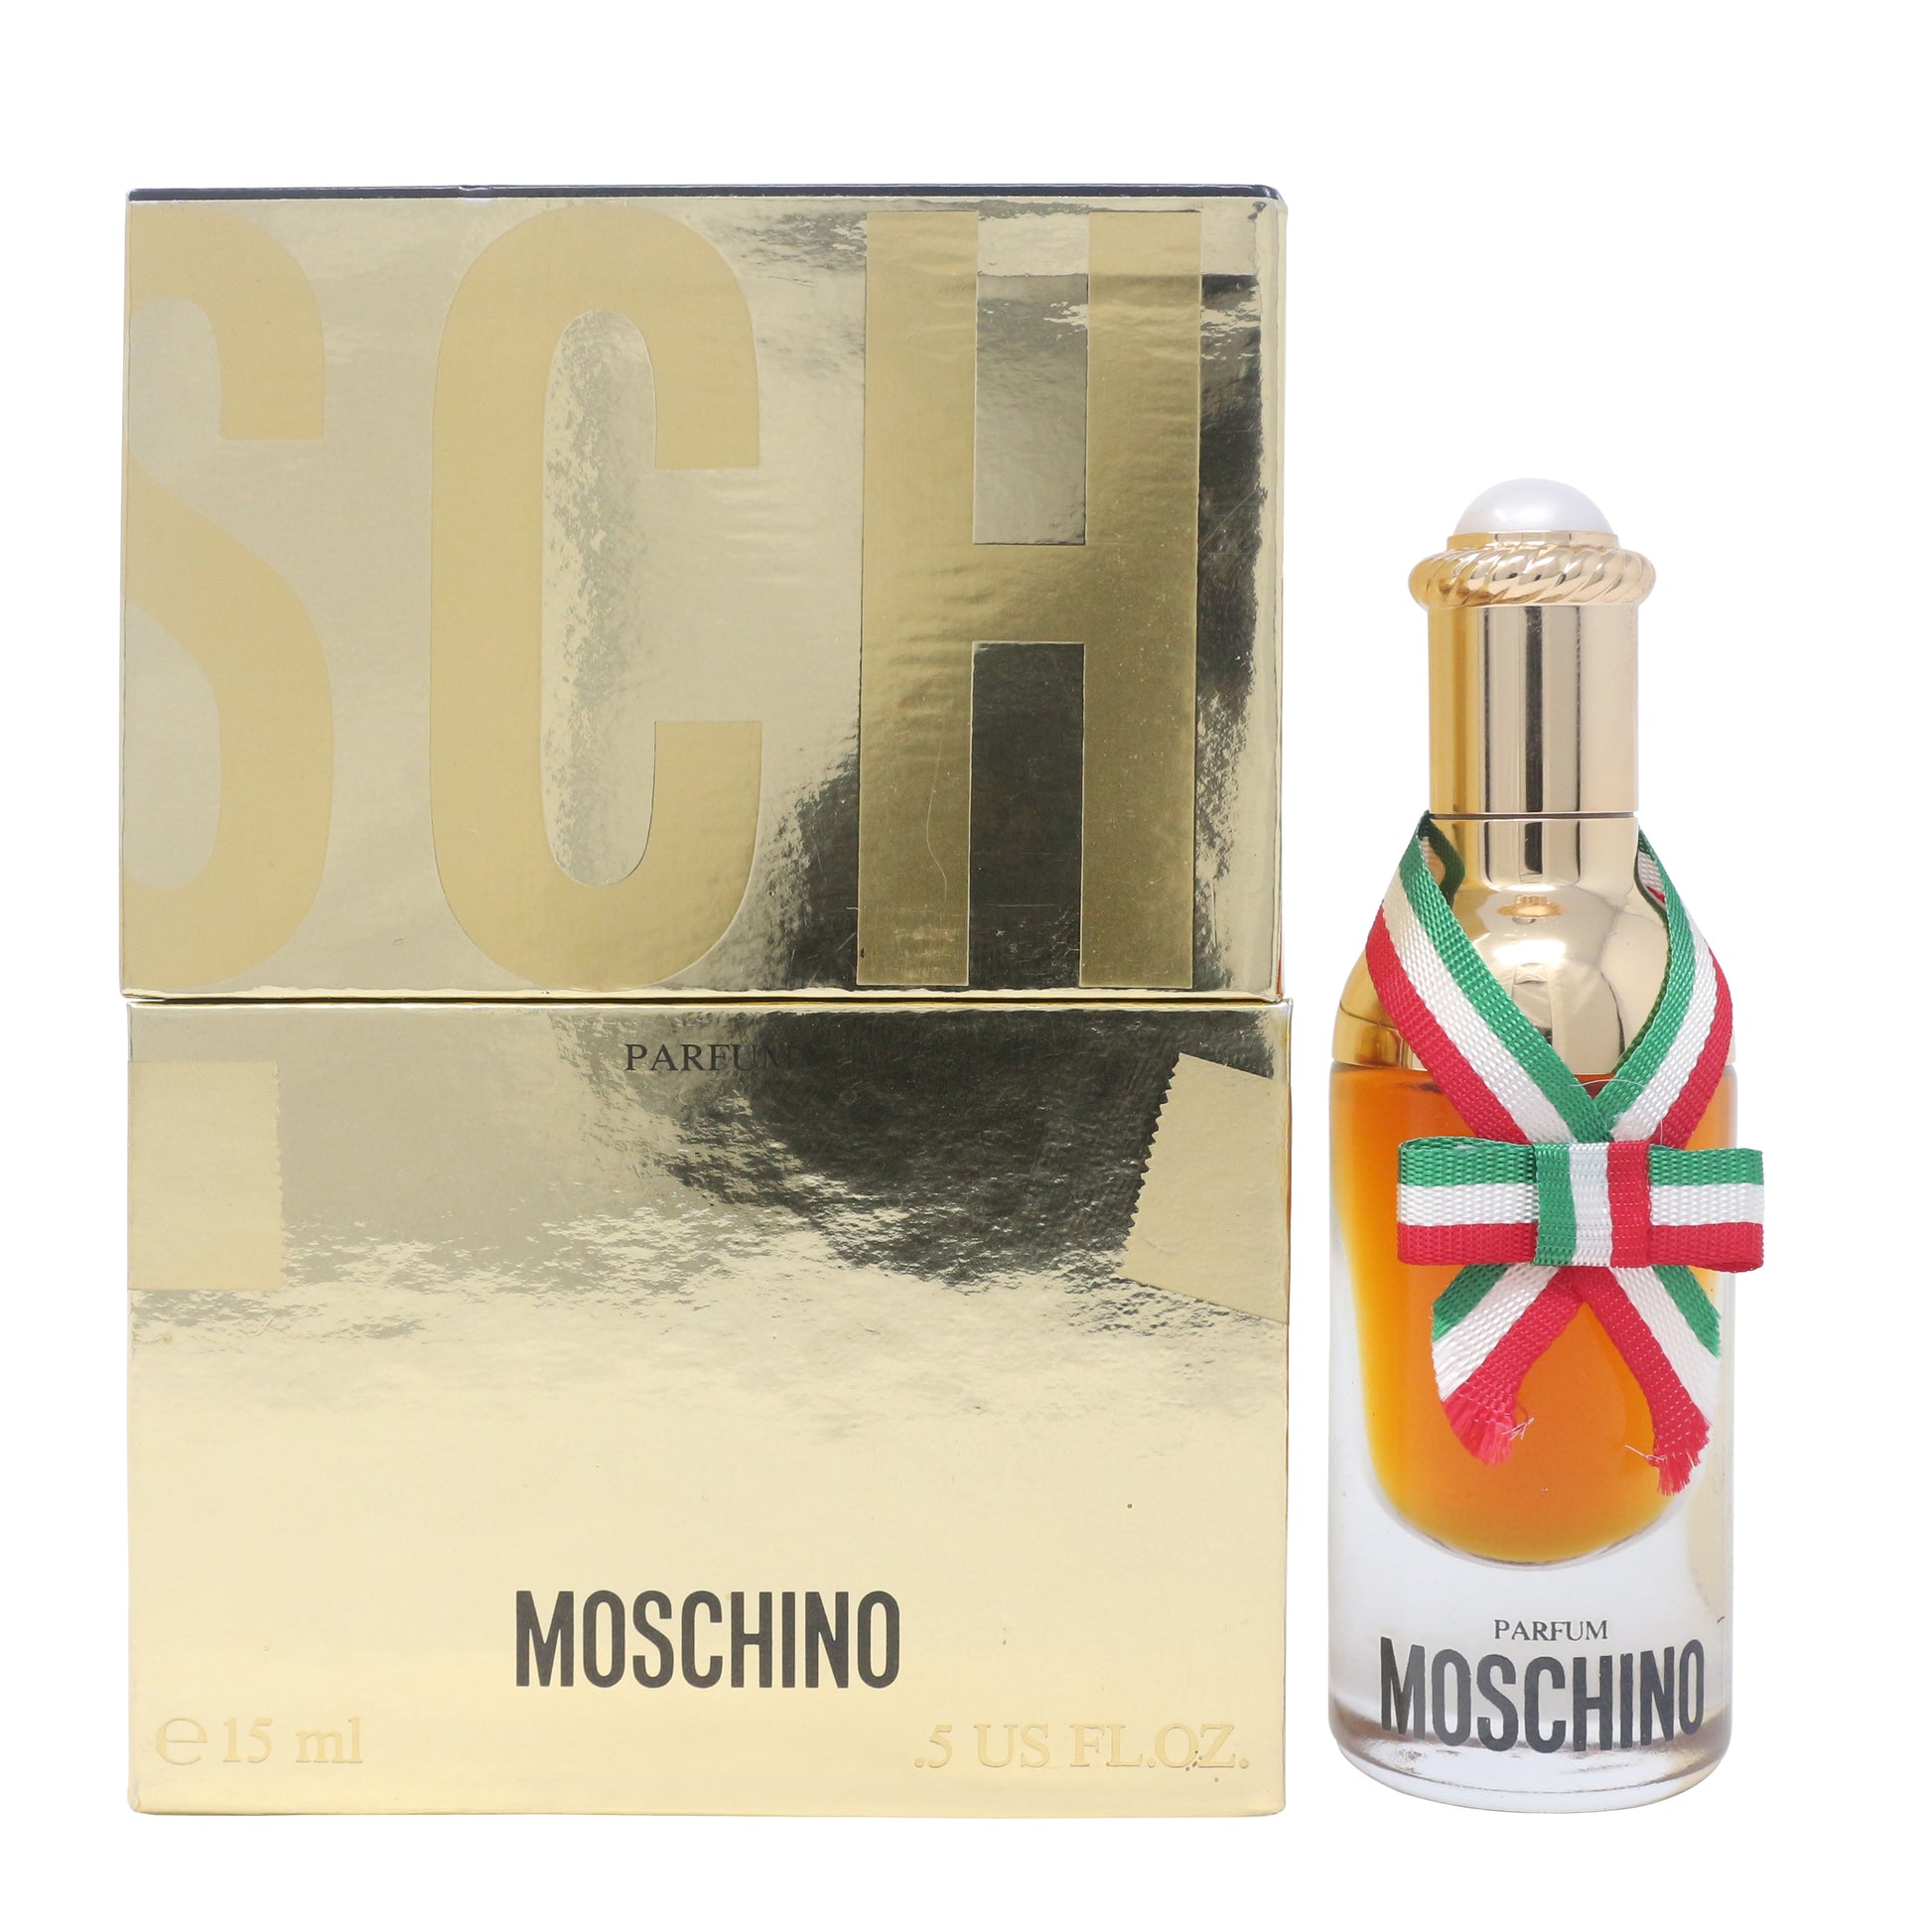 Moschino Parfum/Perfume 15 mL